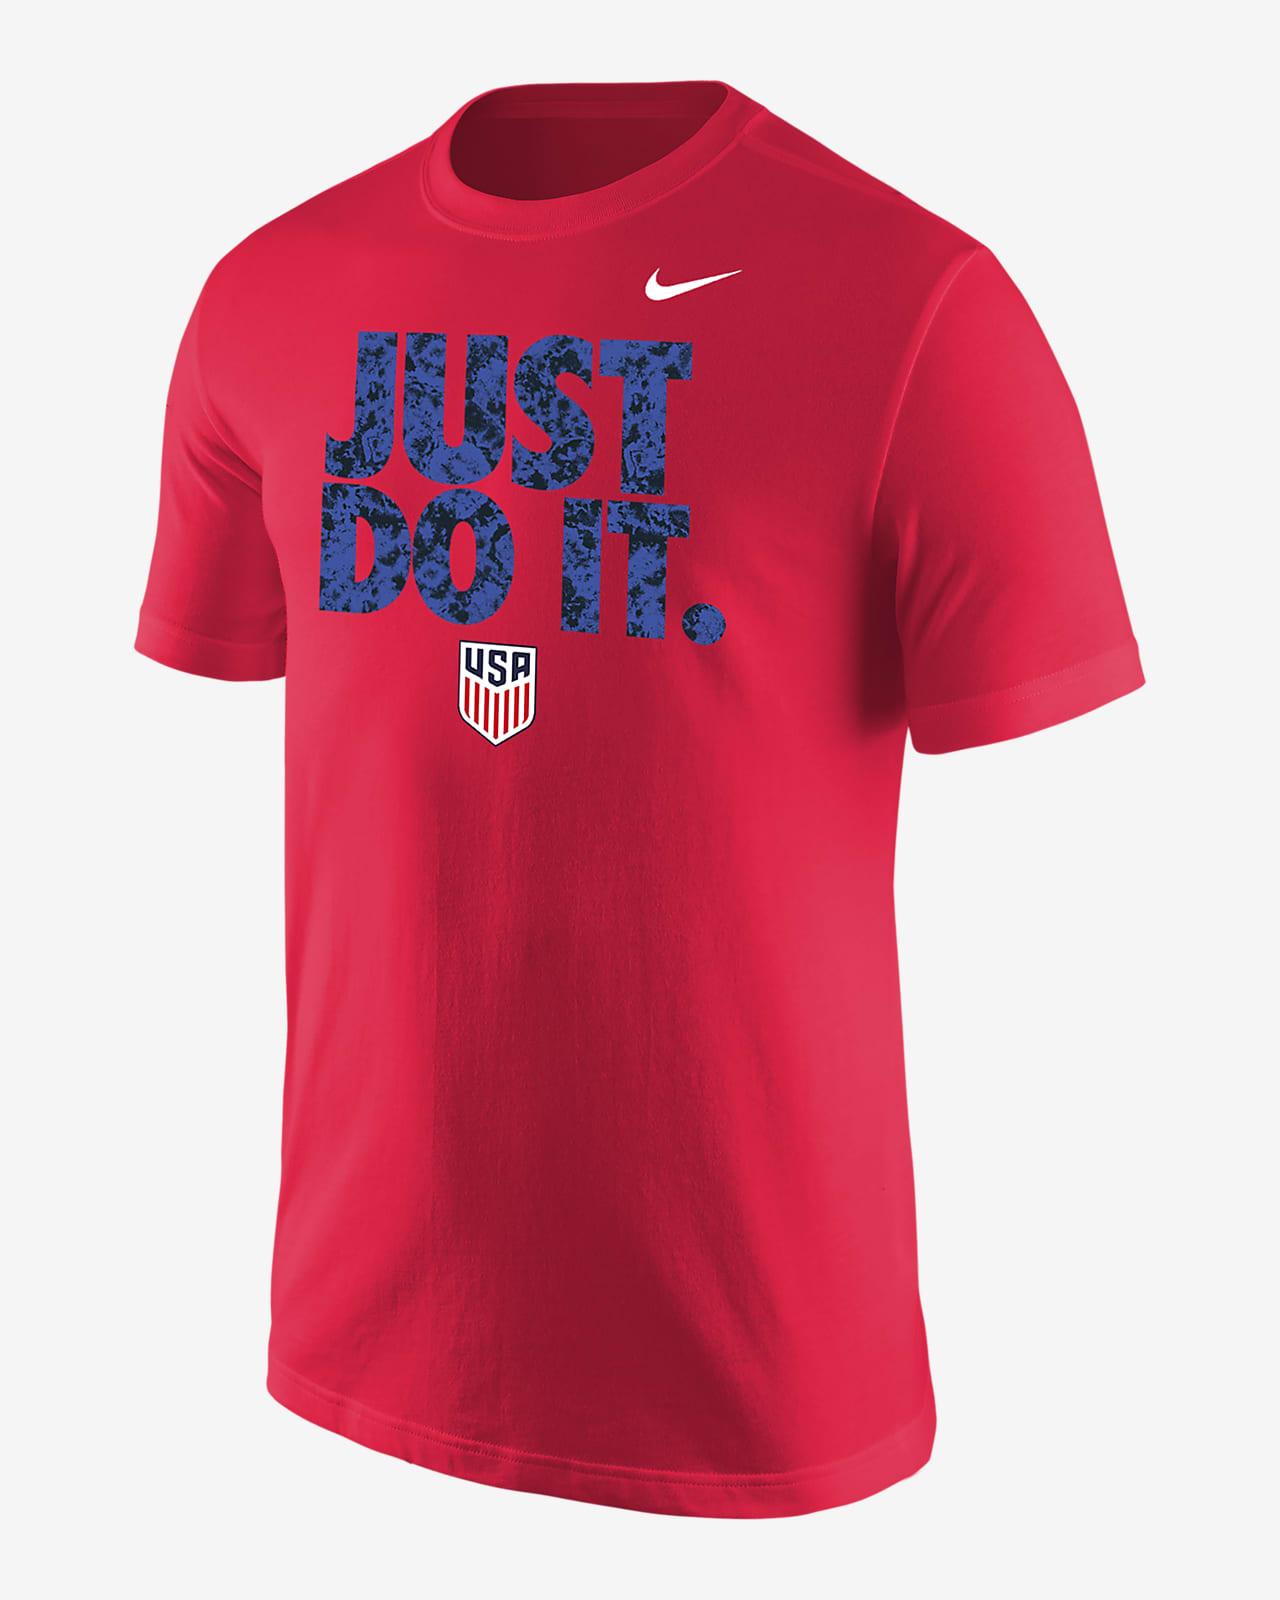 USA Men's Nike Core T-Shirt